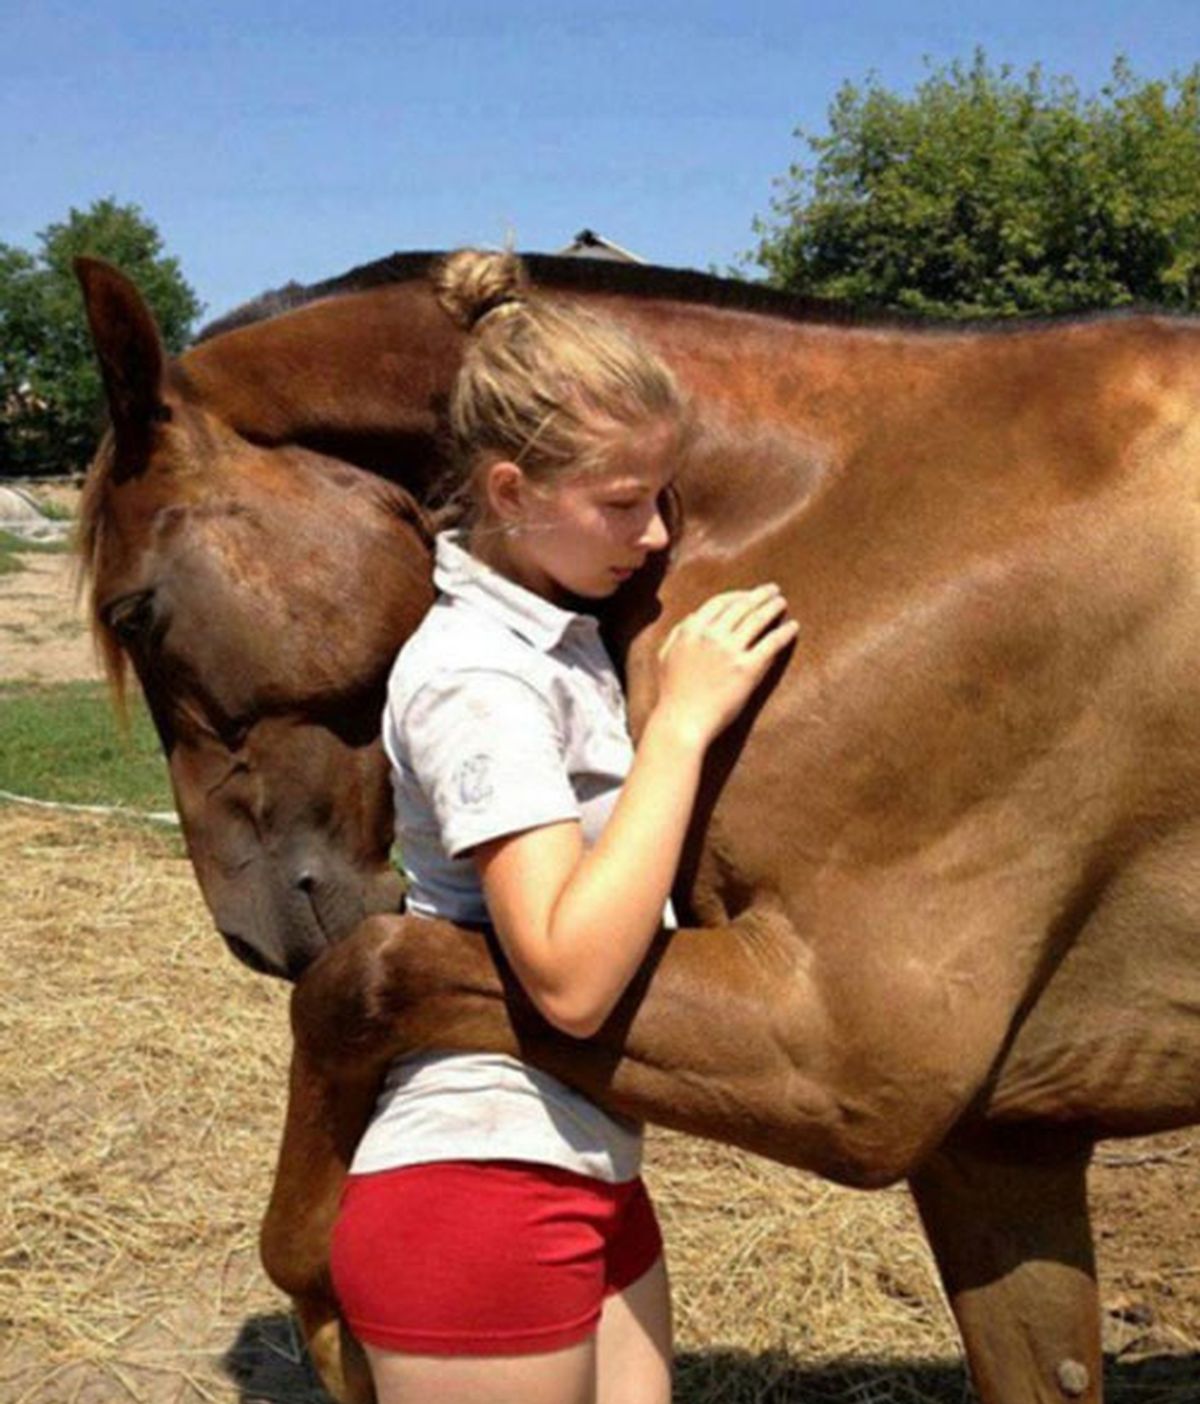 caballos,emociones caballos,emociones humanas y caballos